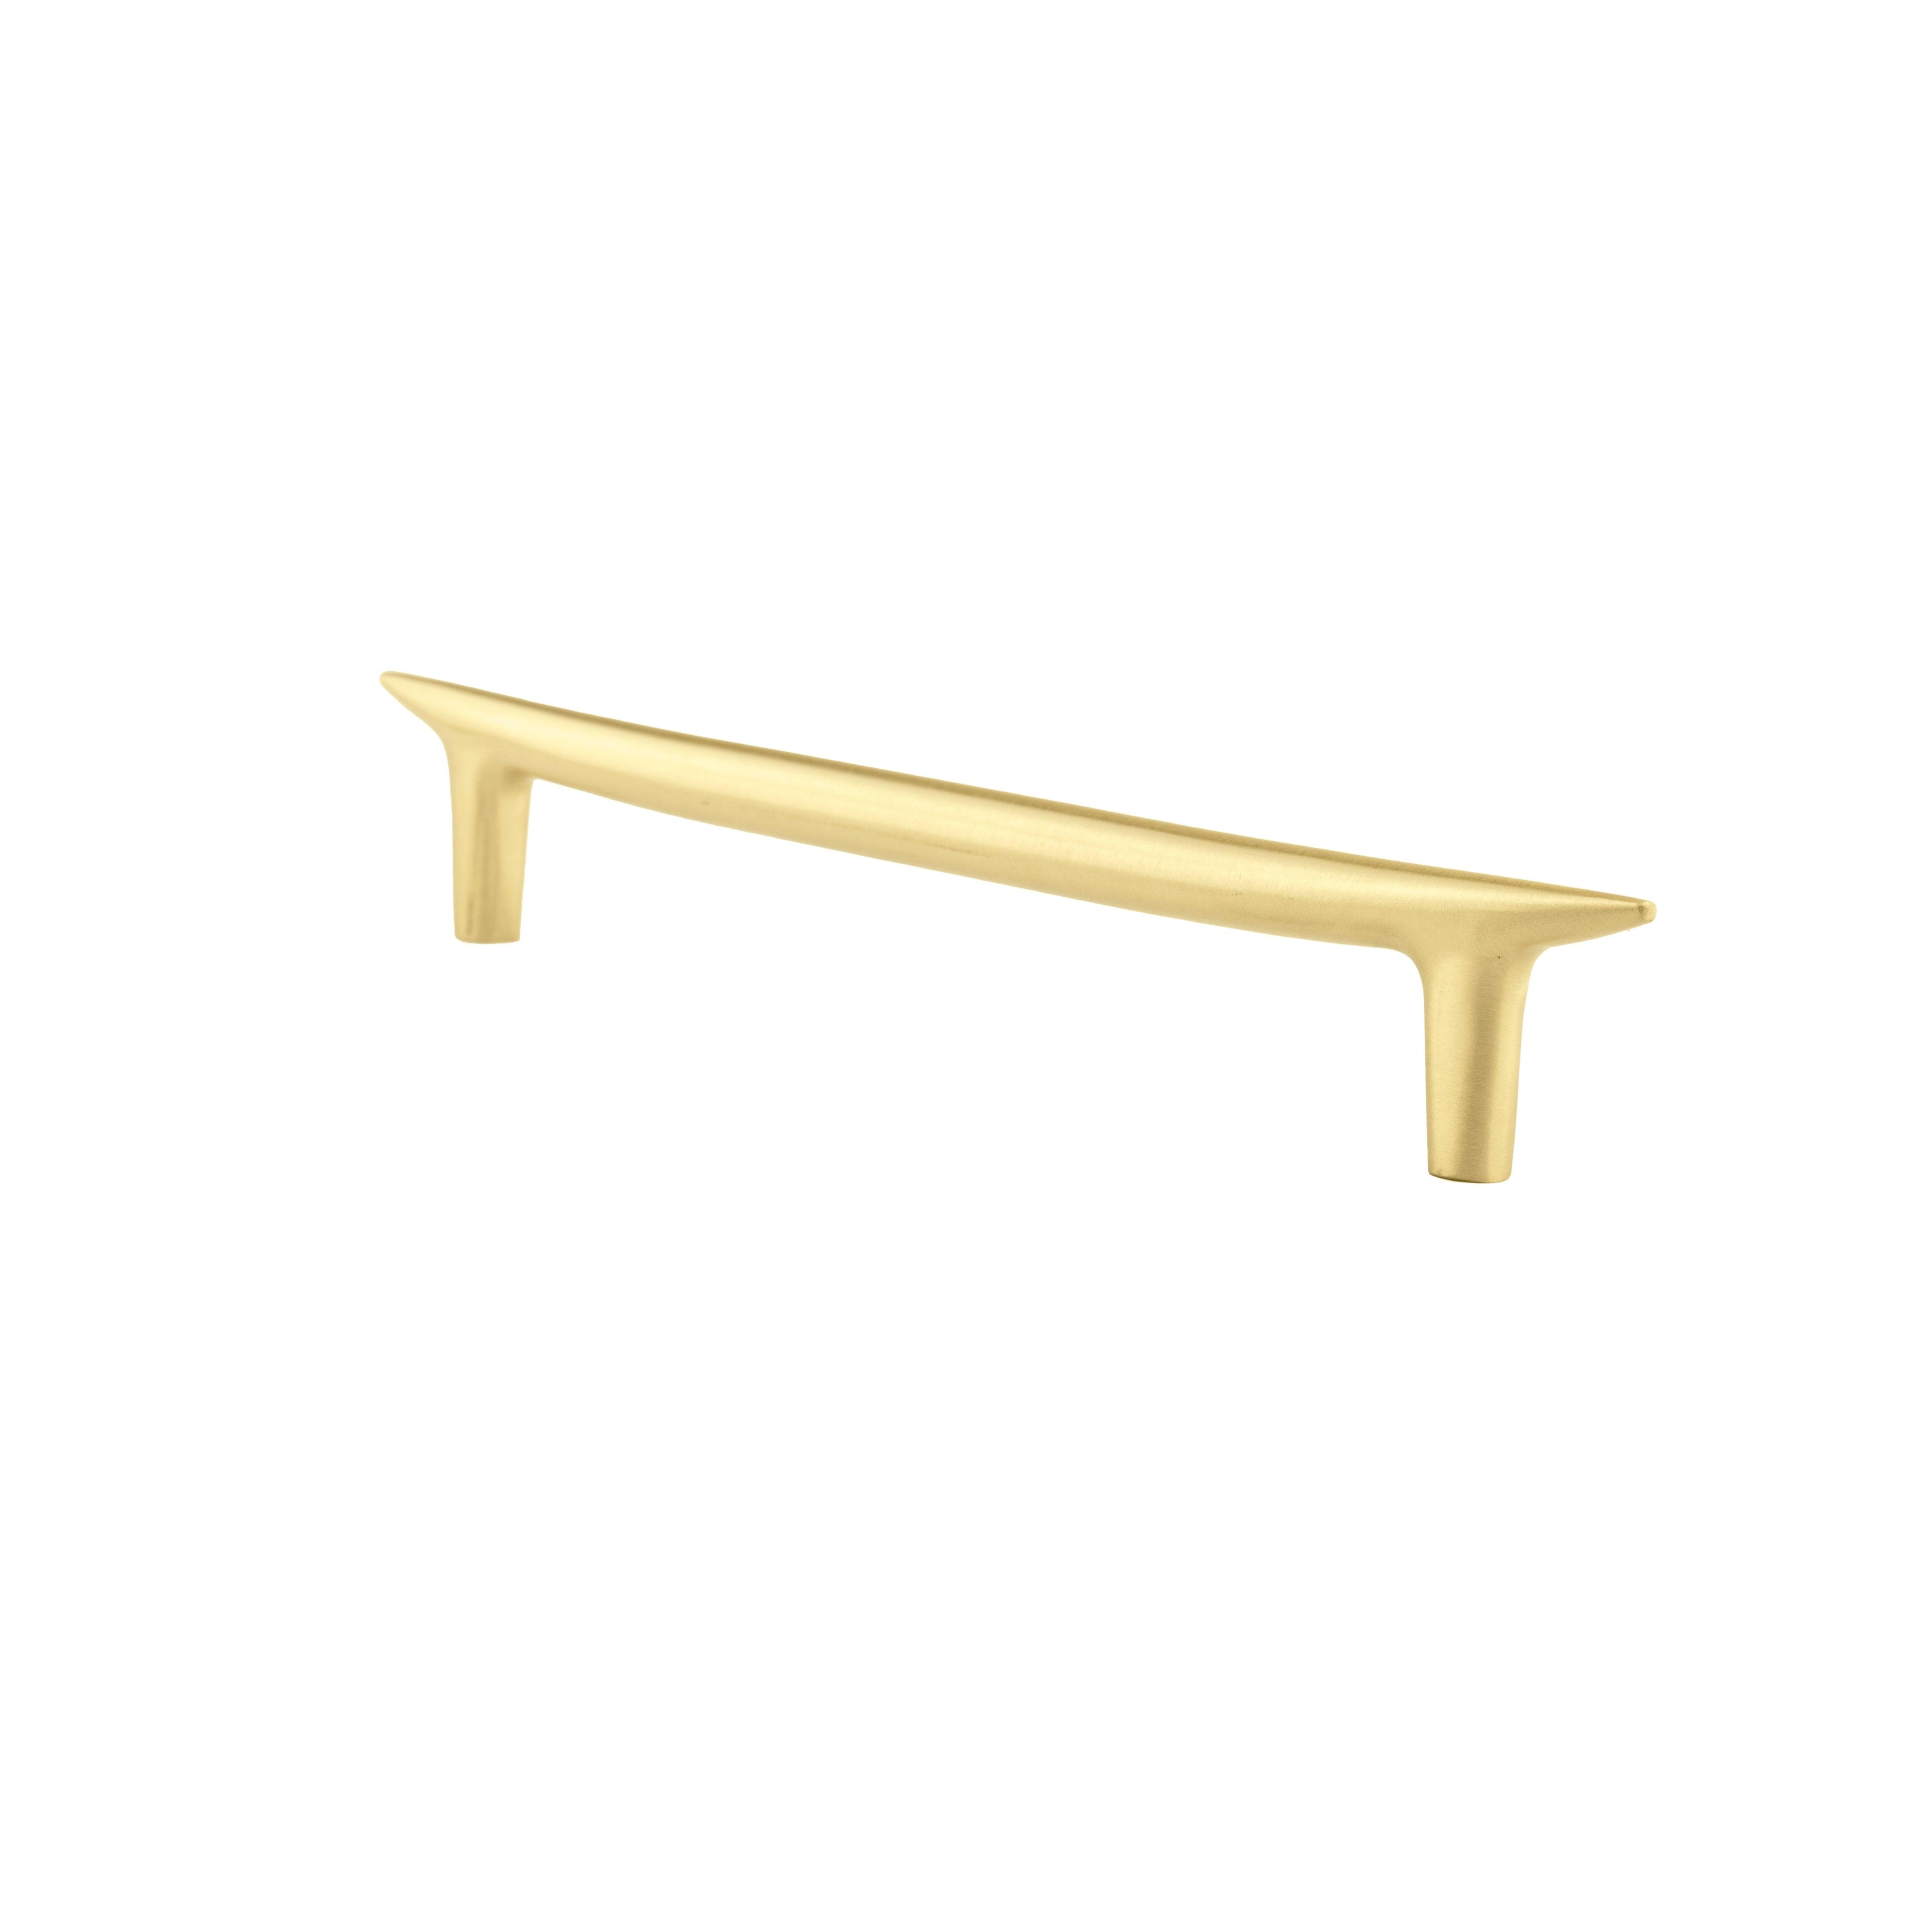 Palladian T Bar Handle Handles 200mm / Gold / Brass - M A N T A R A